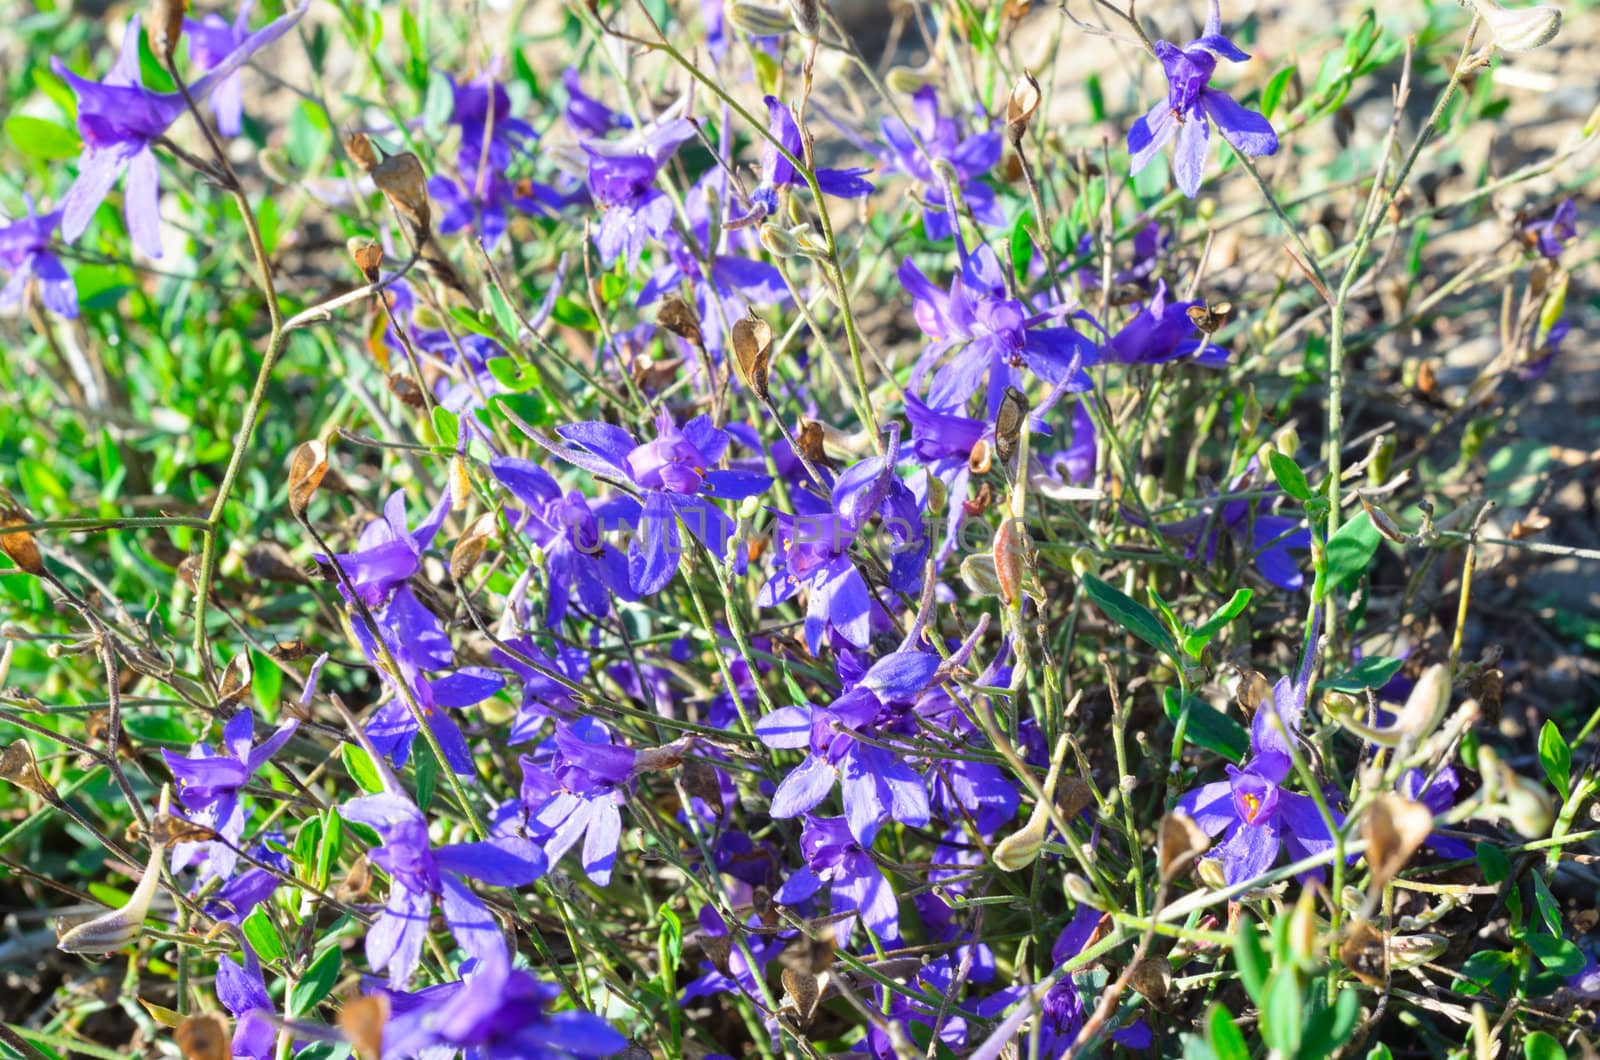 Purple flowers in the field in summer